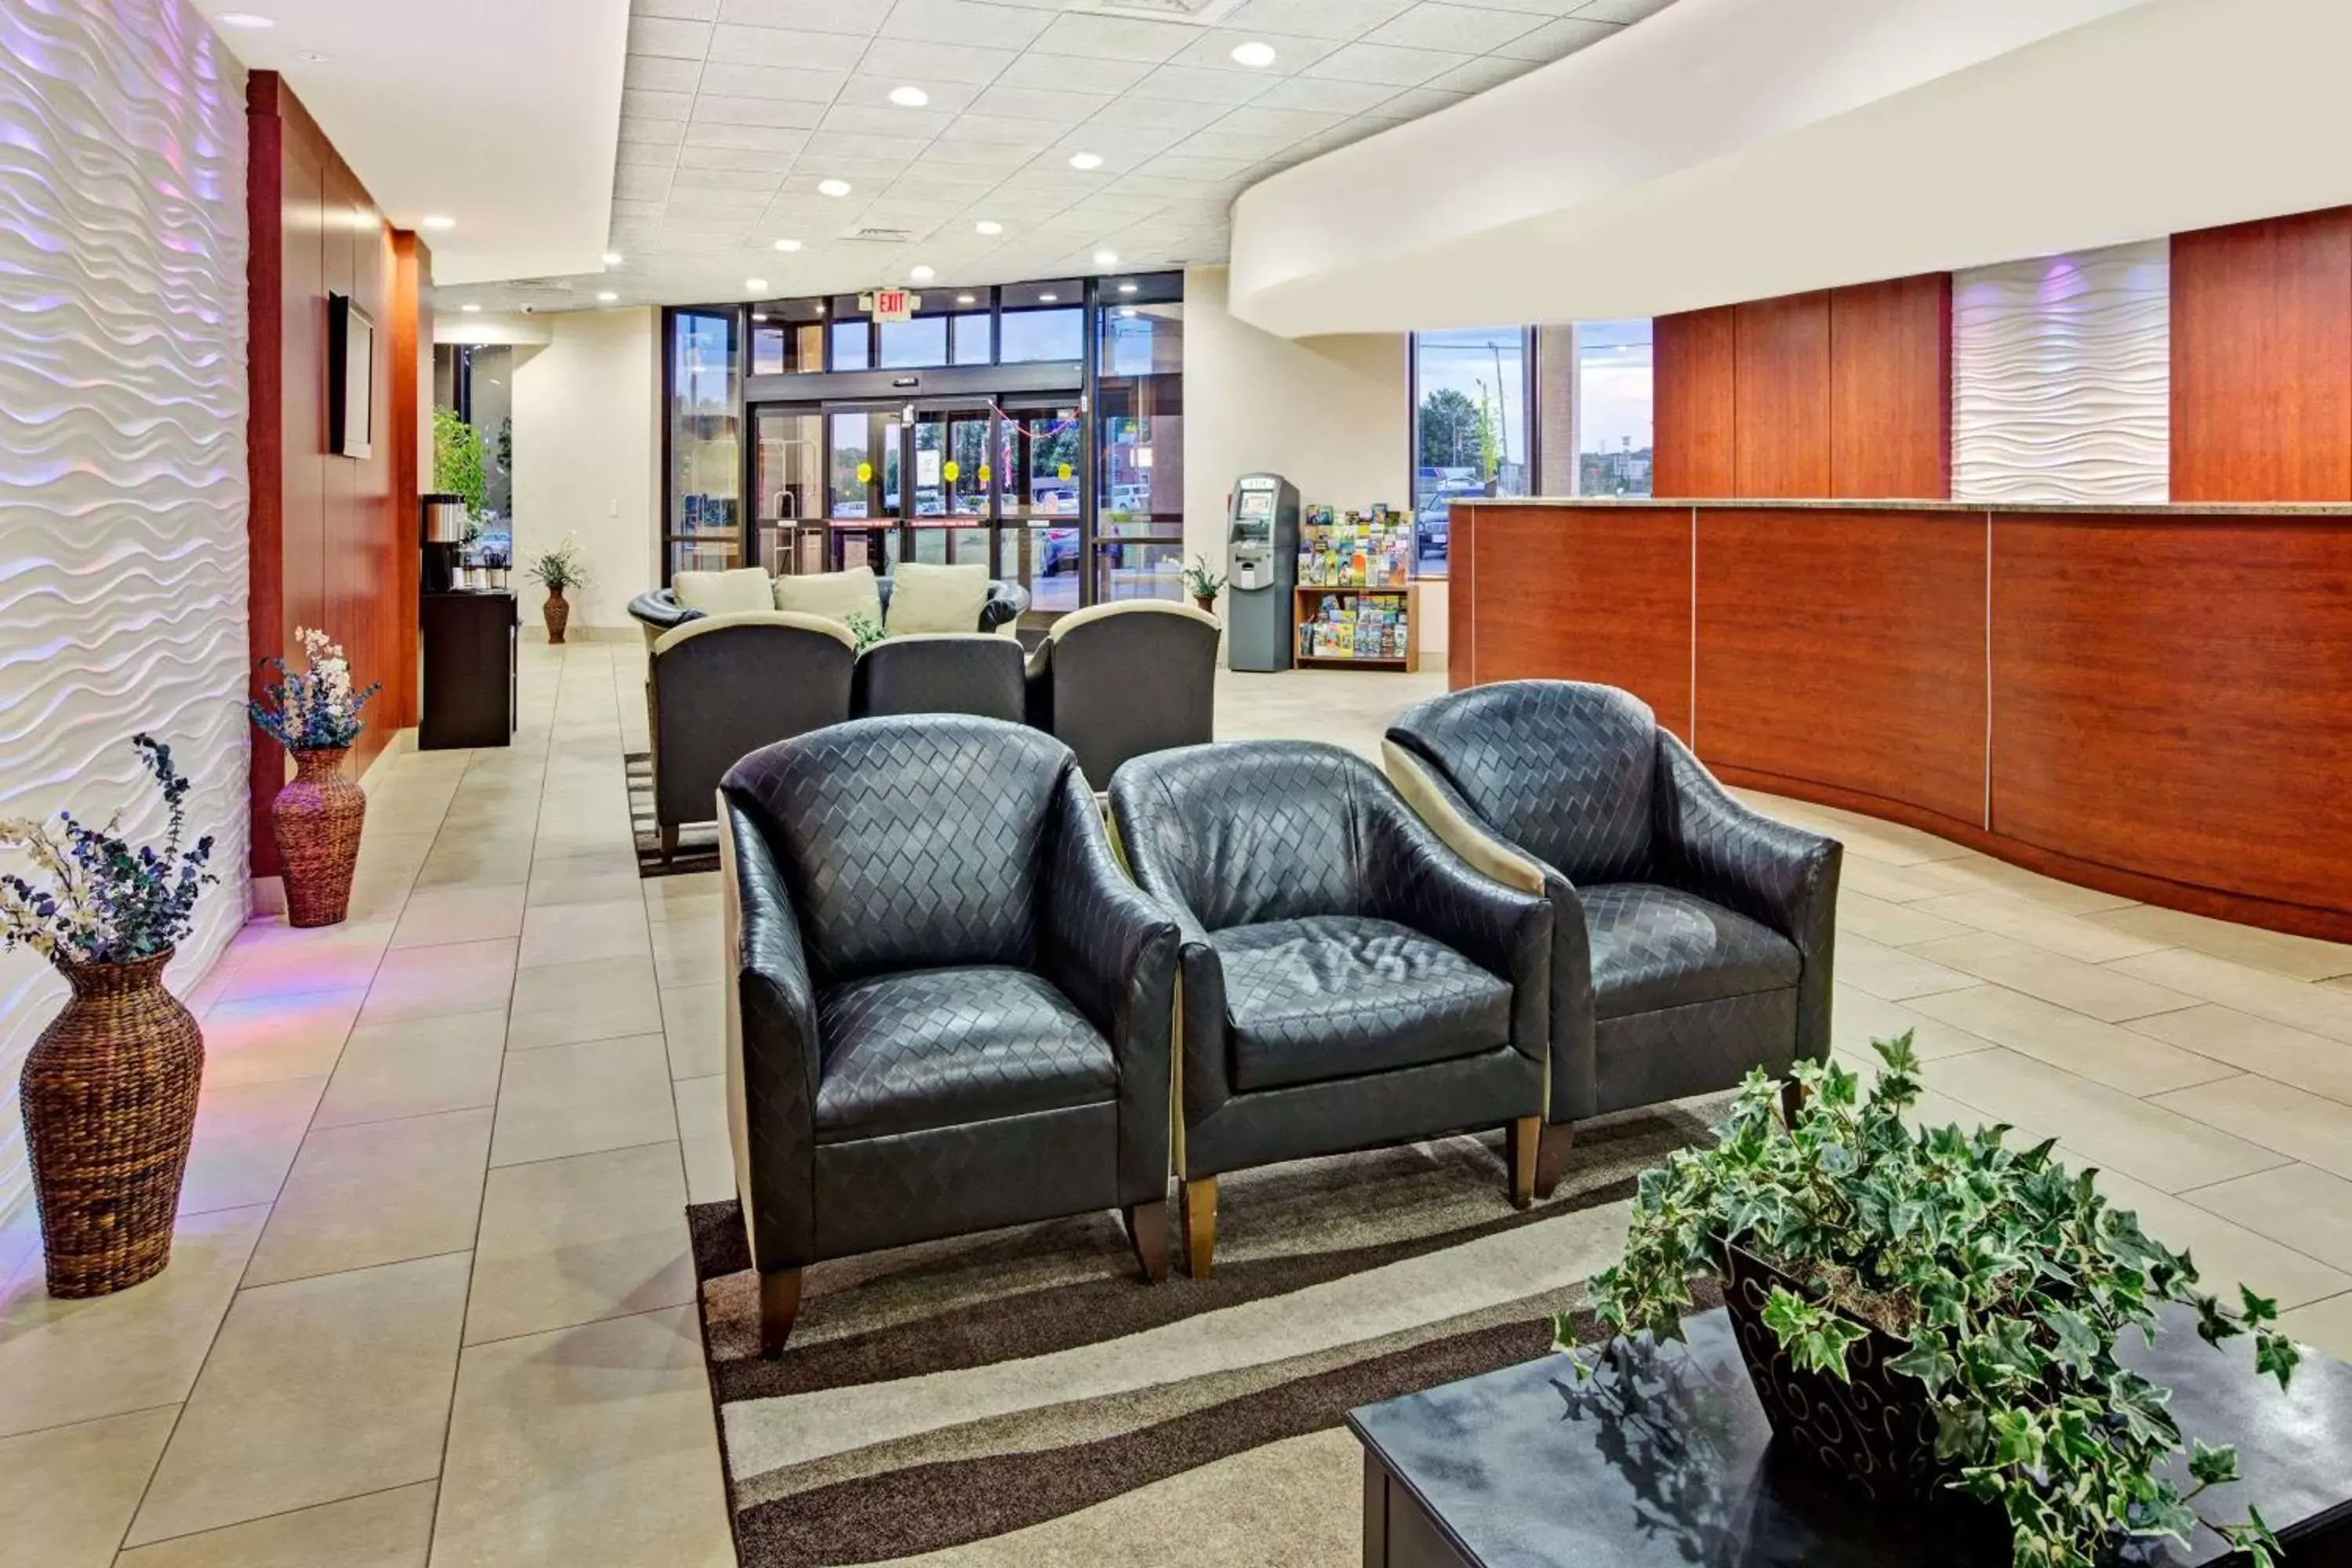 Lobby or reception, Lobby/Reception in Ramada by Wyndham Statesville